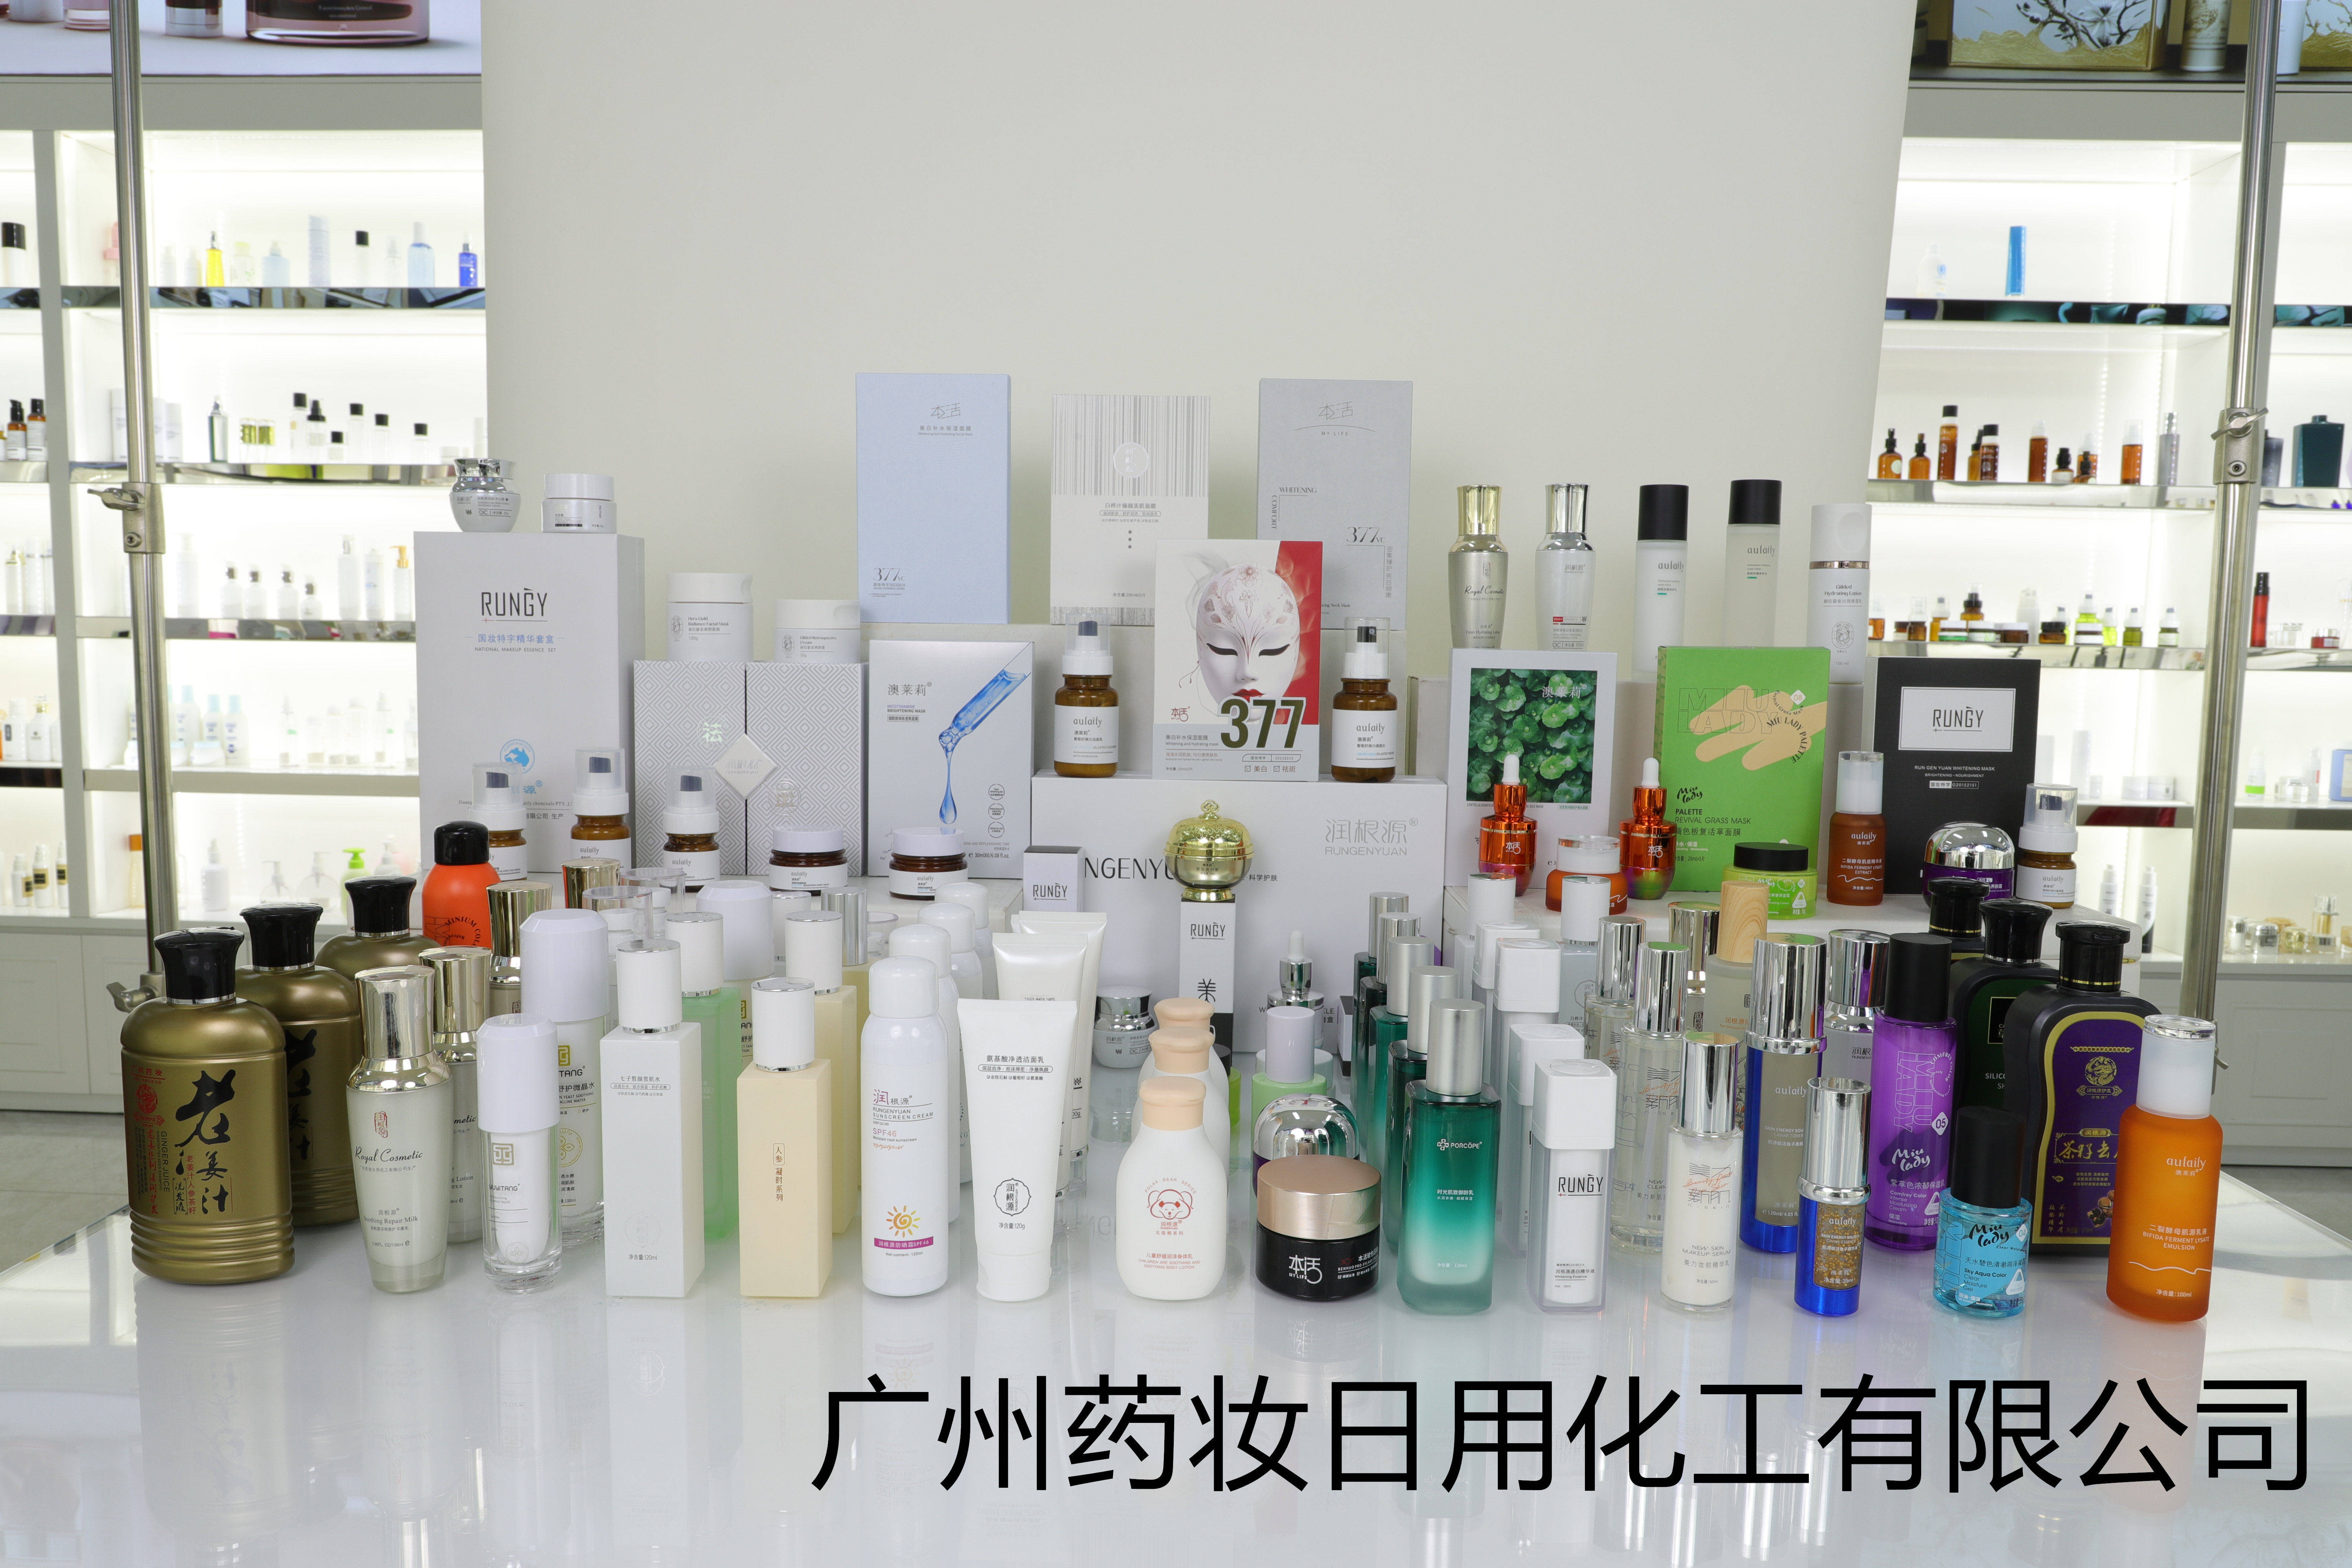 广州药妆:化妆品工厂技术成长之路——研发至生产的变革与新机遇